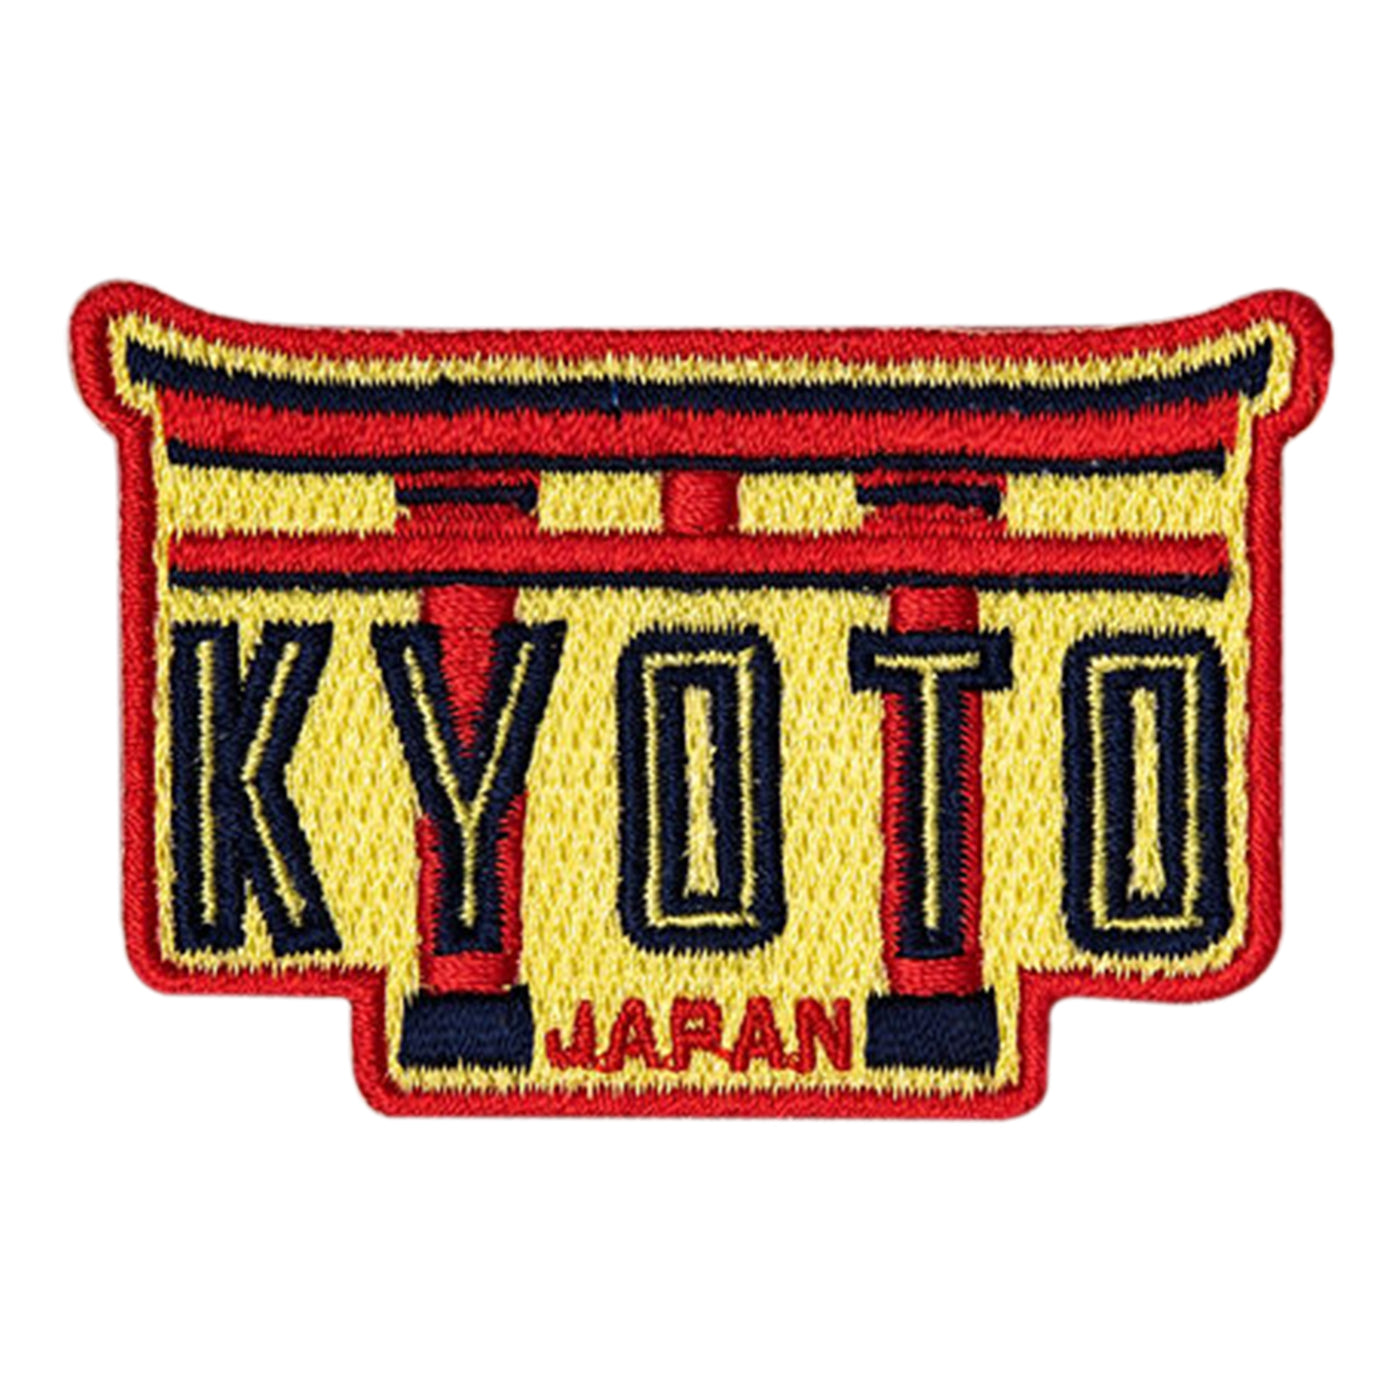 Kyoto Japan Hook Patch